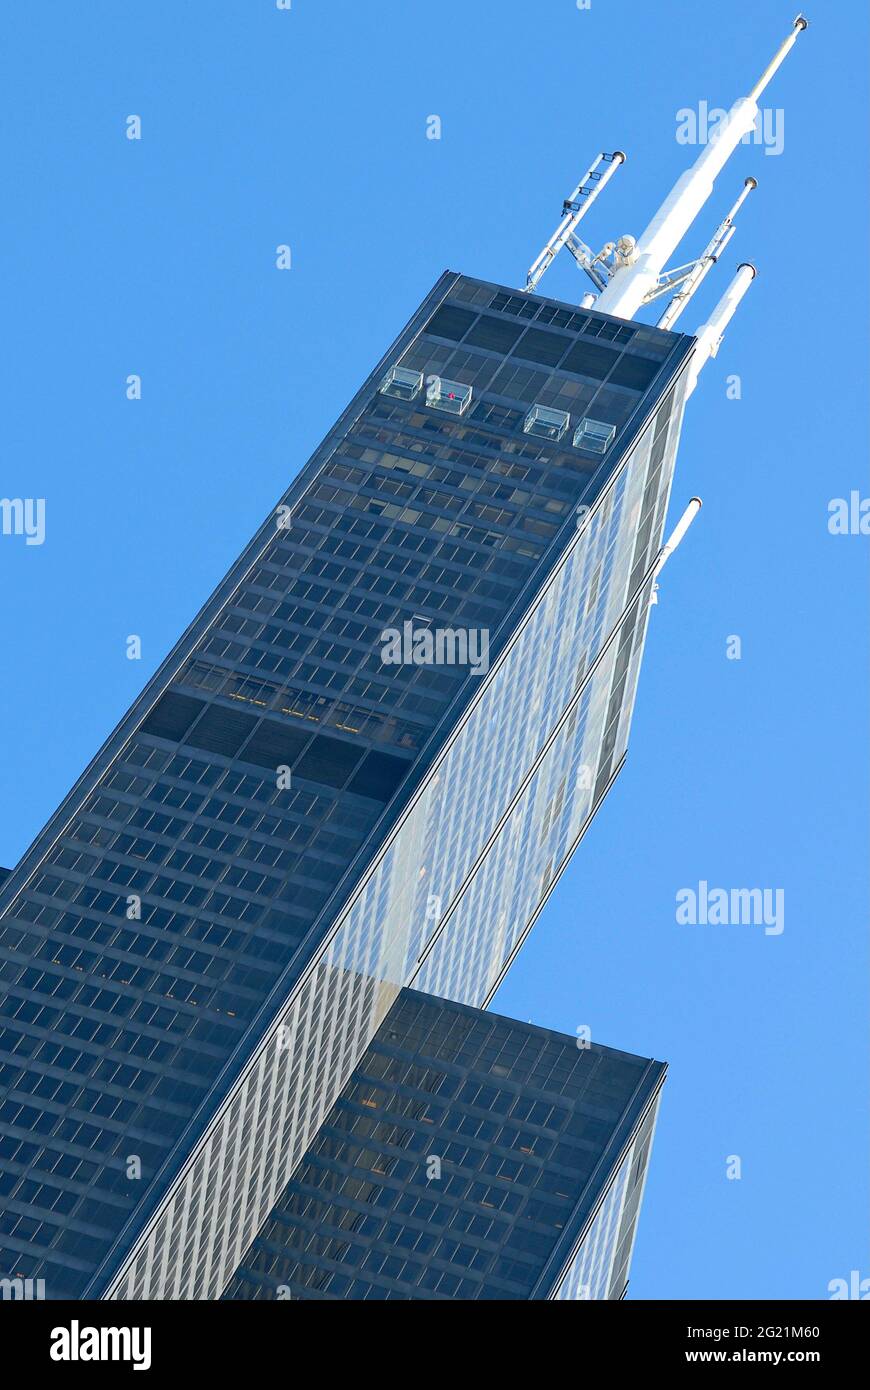 Le gratte-ciel de la Willis Tower, un monument international de Chicago, Illinois, est le troisième plus haut bâtiment des États-Unis connu pour son Skywalk. Banque D'Images